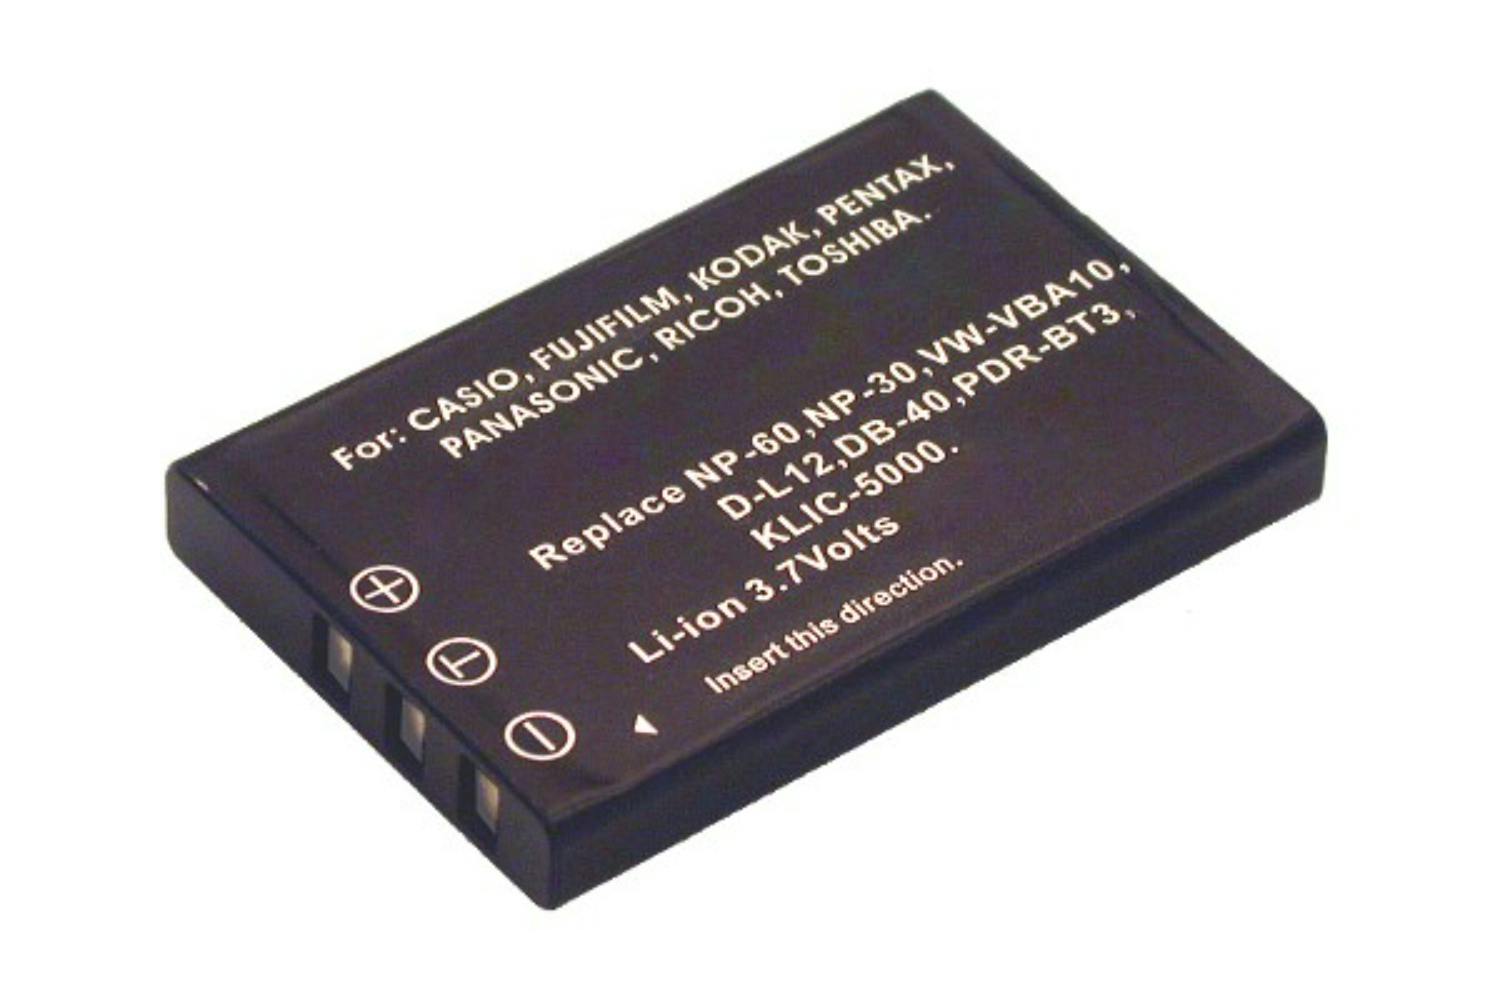 2-Power Digital Camera Battery 3.7V 1000mAh